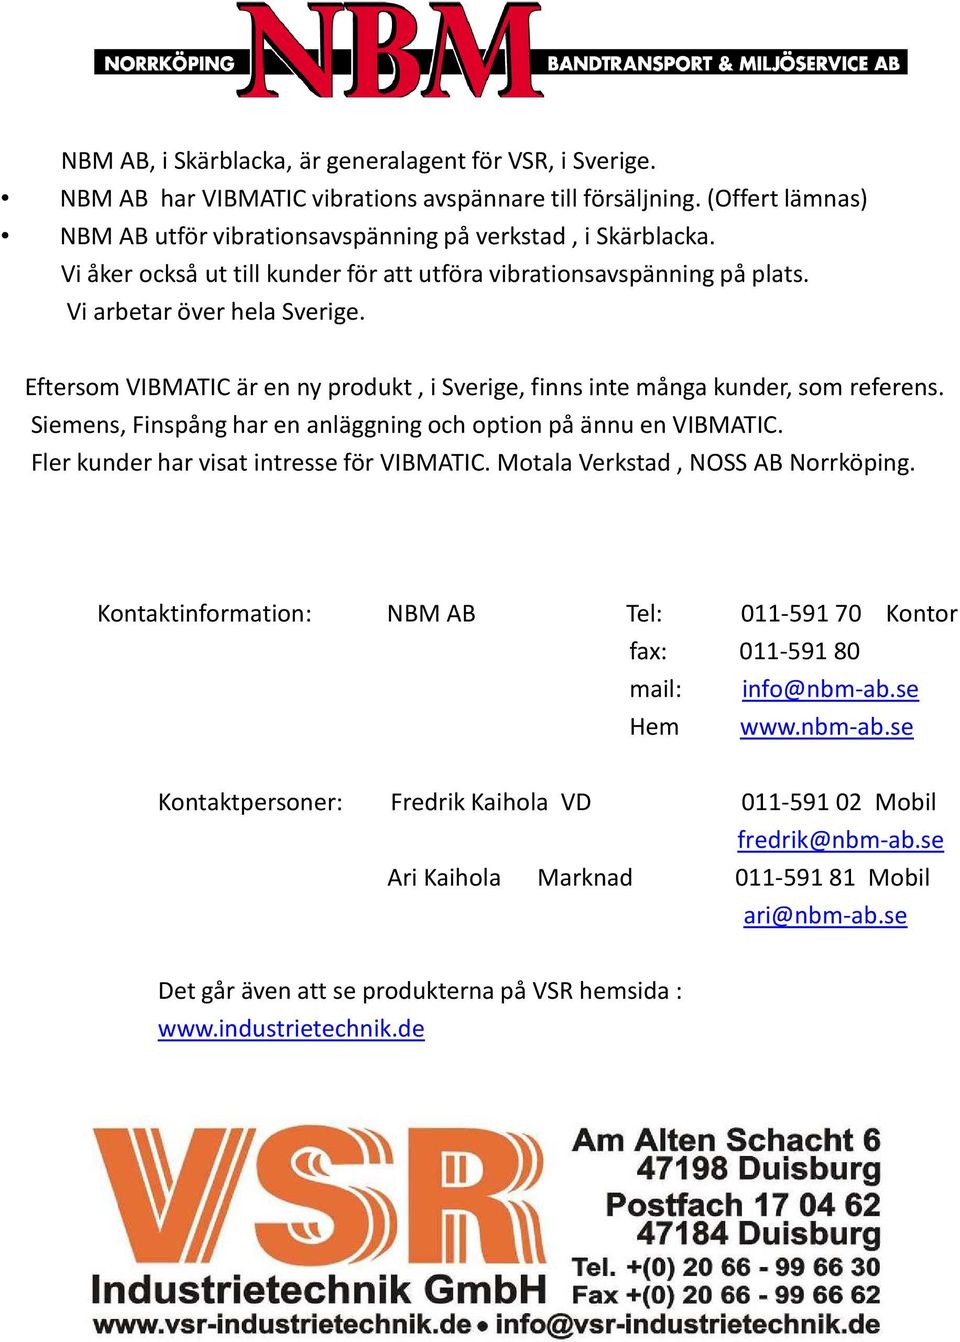 Siemens, Finspång har en anläggning och option på ännu en VIBMATIC. Fler kunder har visat intresse för VIBMATIC. Motala Verkstad, NOSS AB Norrköping.